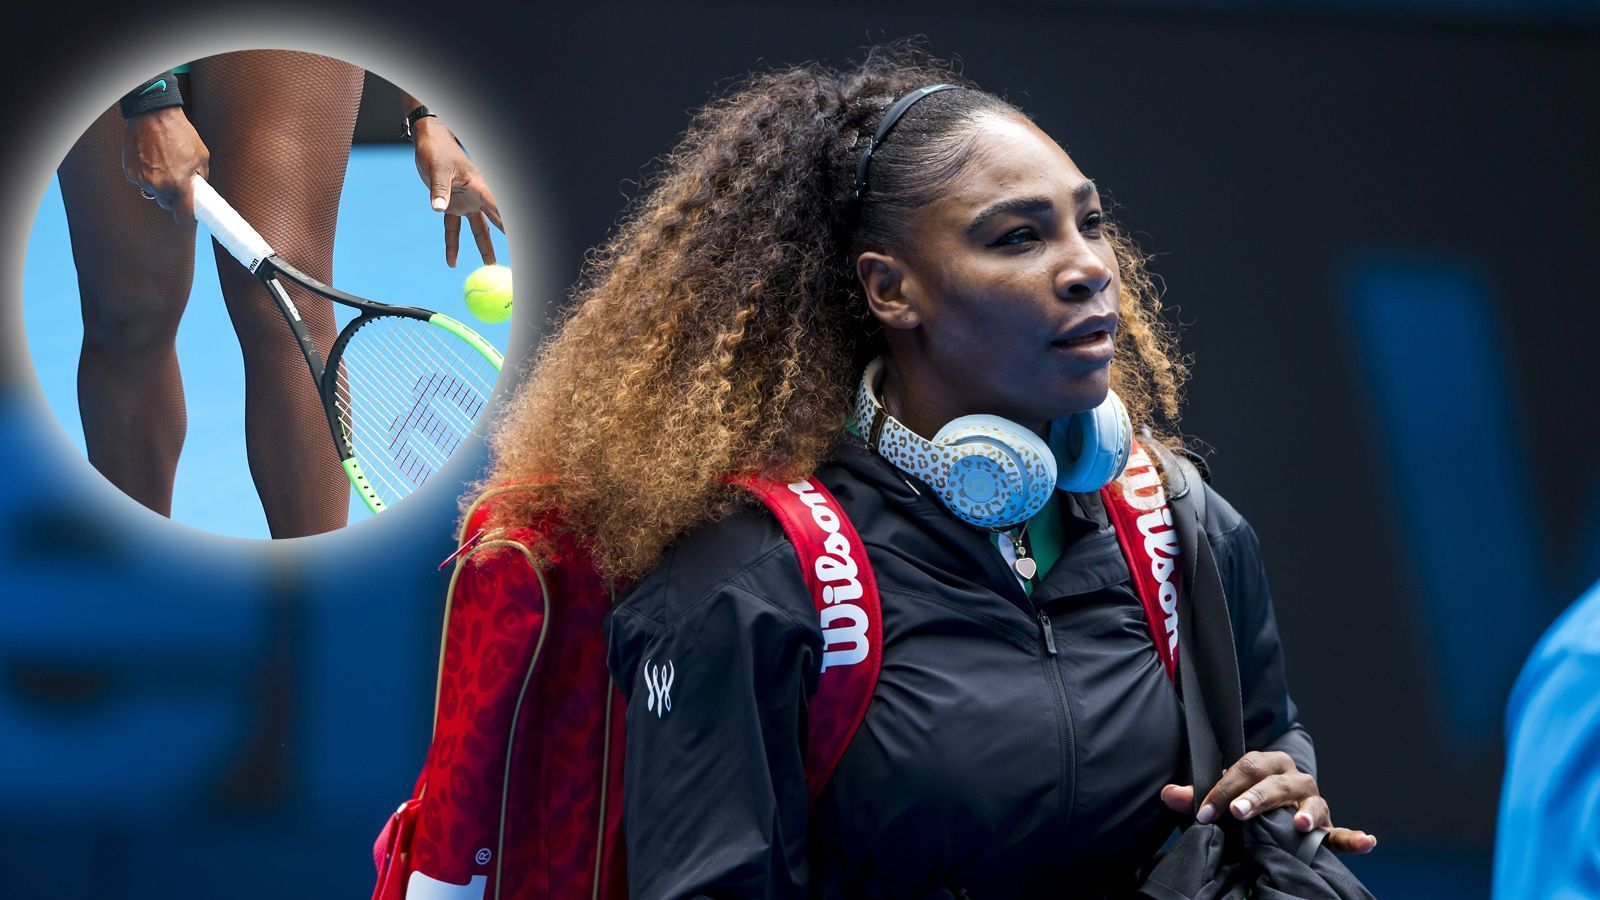 
                <strong>Serena Williams - Australian Open 2019</strong><br>
                Vor ihrem Erstrunden-Match in Melbourne war der neuste Williams-Look ein gut gehütetes Geheimnis. Deshalb kam die 37-Jährige im schwarzen Mantel auf den Platz, spielte sich darin sogar ein - trotz Außentemperatur von über 30 Grad im australischen Sommer. Lediglich ihre Netzstrümpfe waren direkt zu erkennen. Diese haben allerdings eine medizinische Funktion, es sind stylisch verpackte Kompressionsstrümpfe. "Ich habe Thrombose, muss sie tragen und die Krankheit wohl bis zu meinem Karriereende behandeln lassen", erklärte Williams.
              